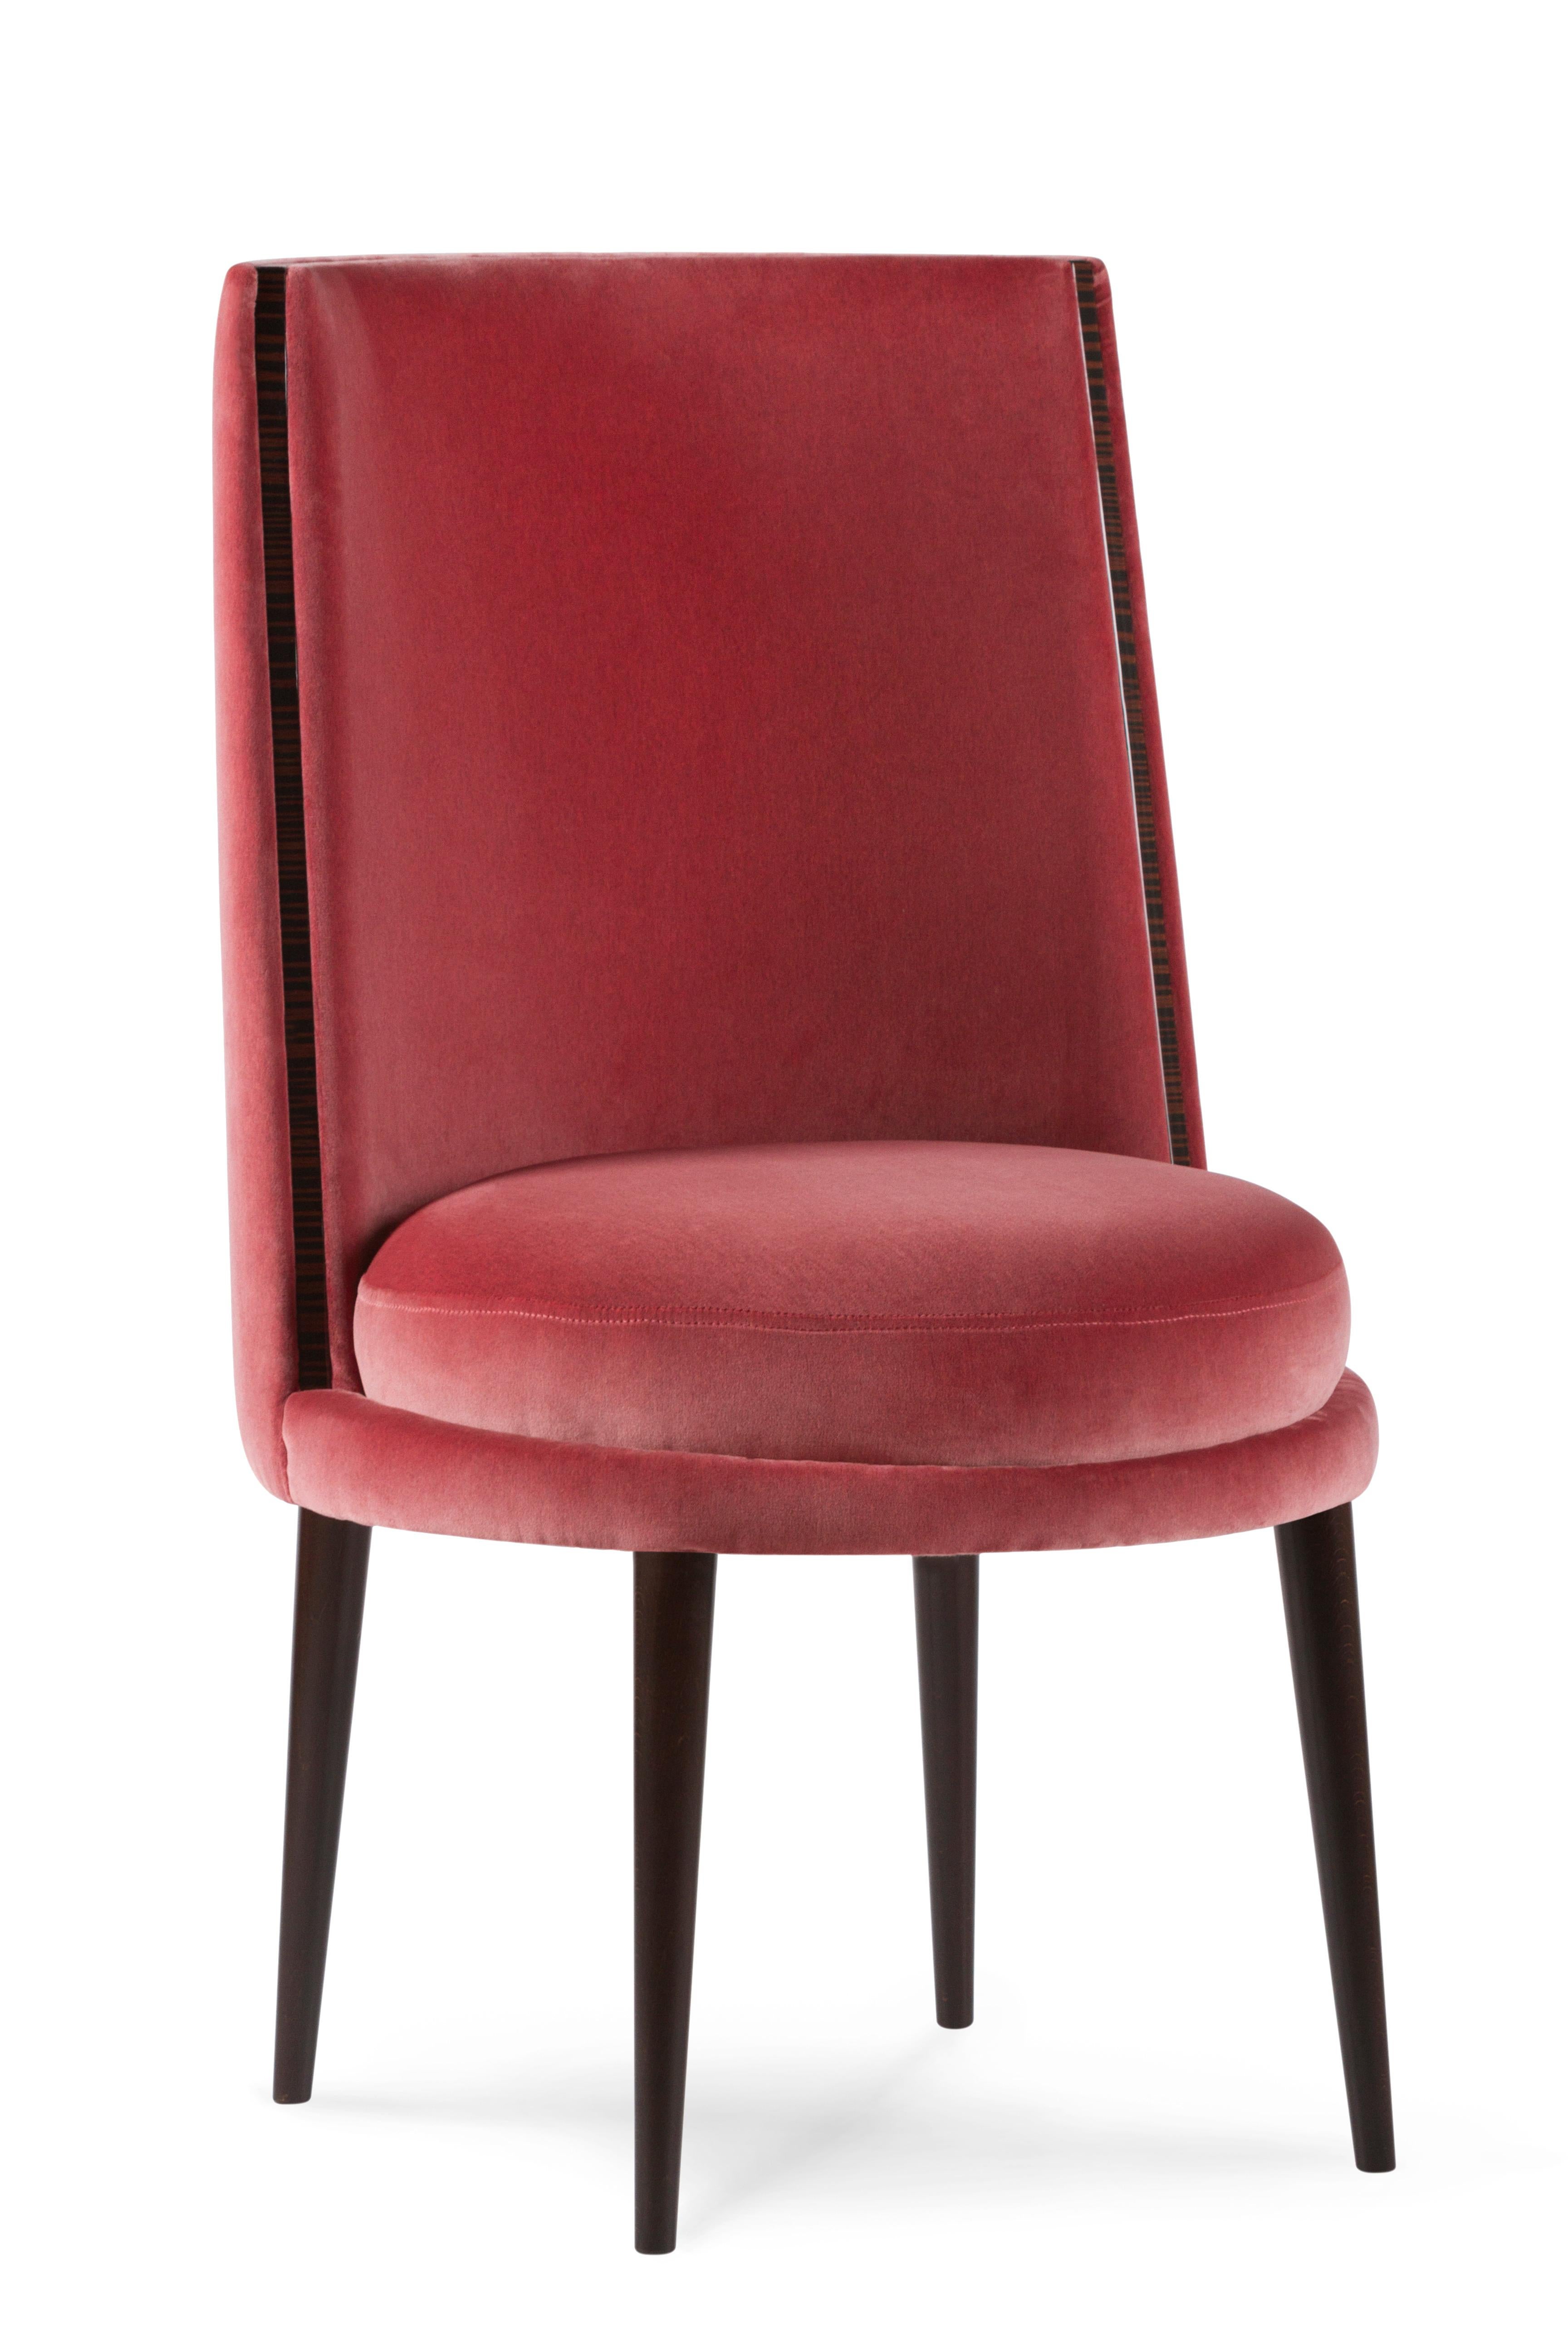 Modern De Castro Dining Chairs, Velvet, Beech, Handmade Portugal by Greenapple For Sale 10